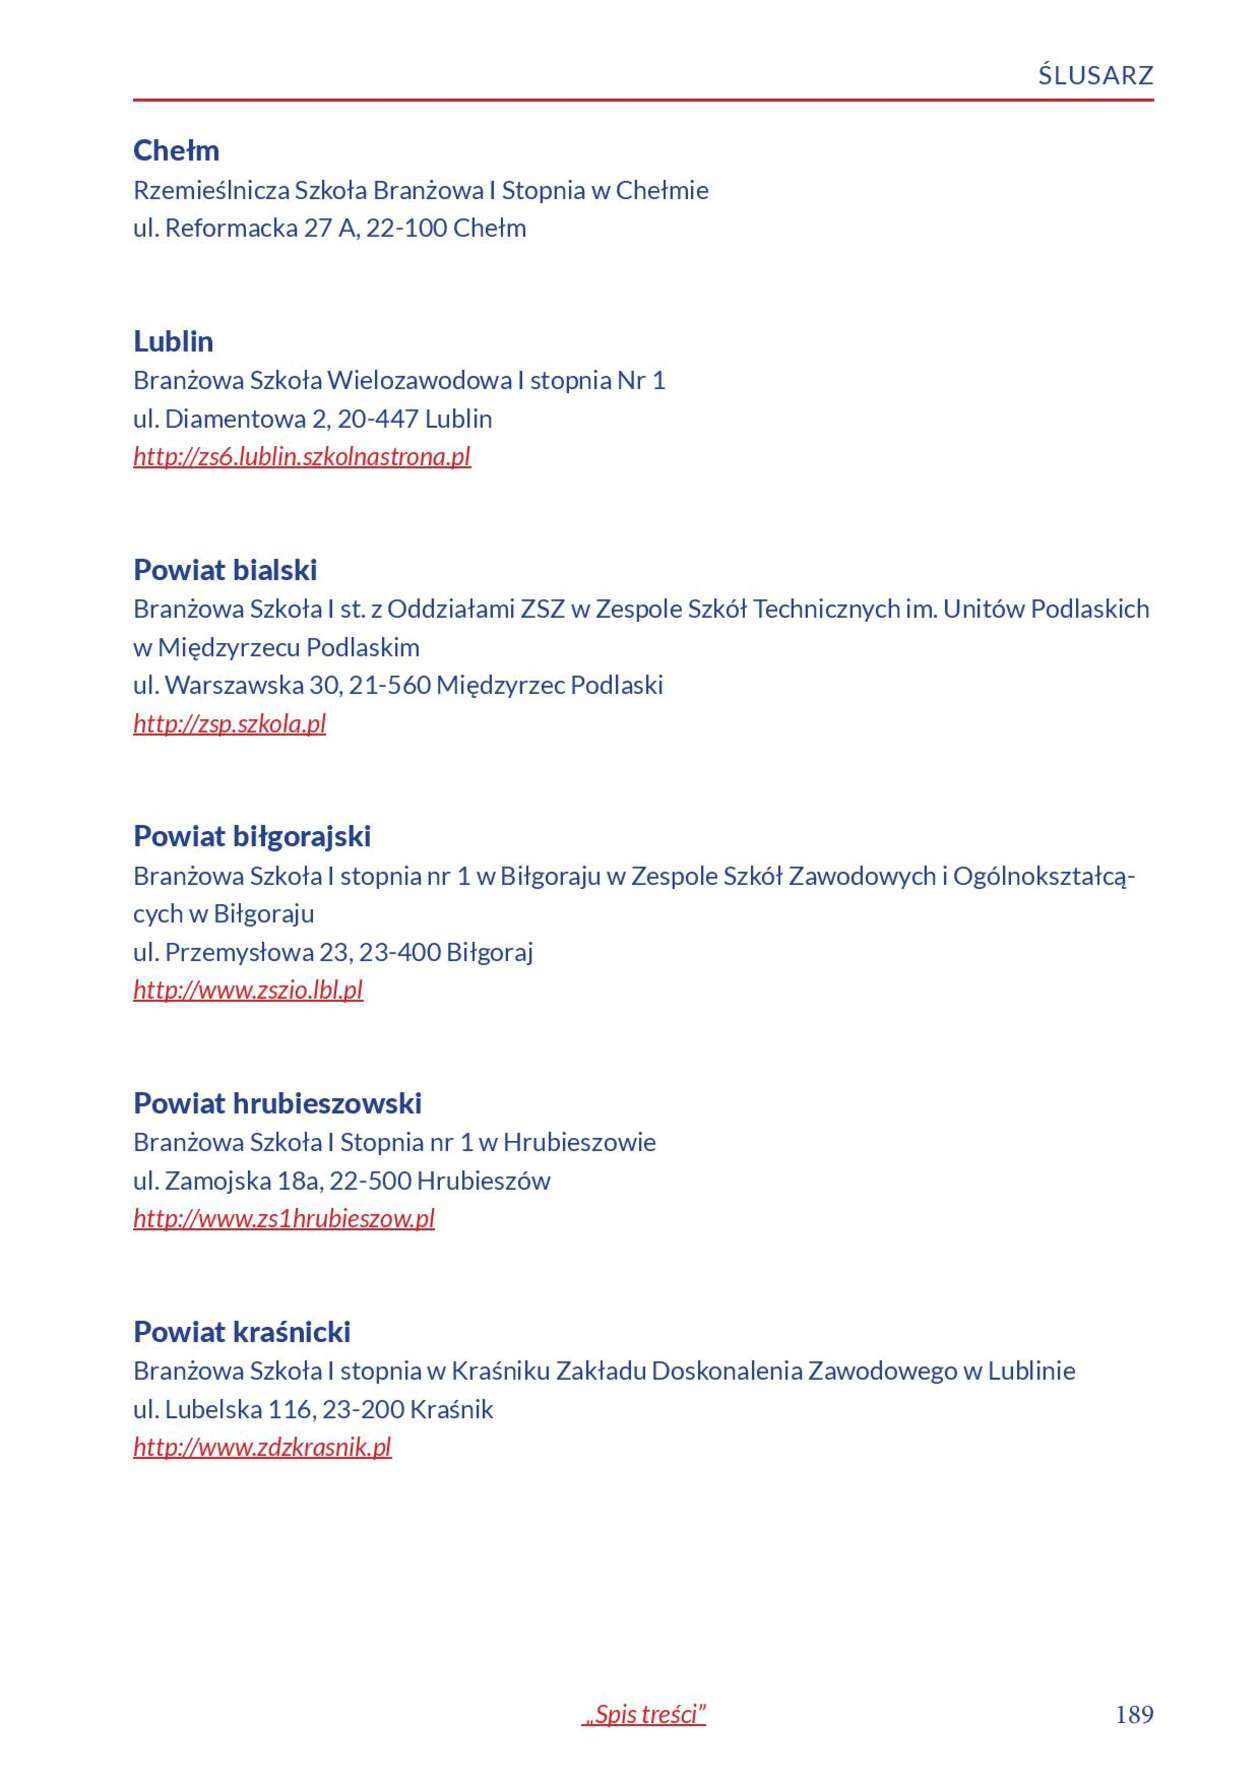  Informator o zawodach 2018/2019 w woj. lubelskim. Część 1 (zdjęcie 187) - Autor: Kuratorium Oświaty w Lublinie